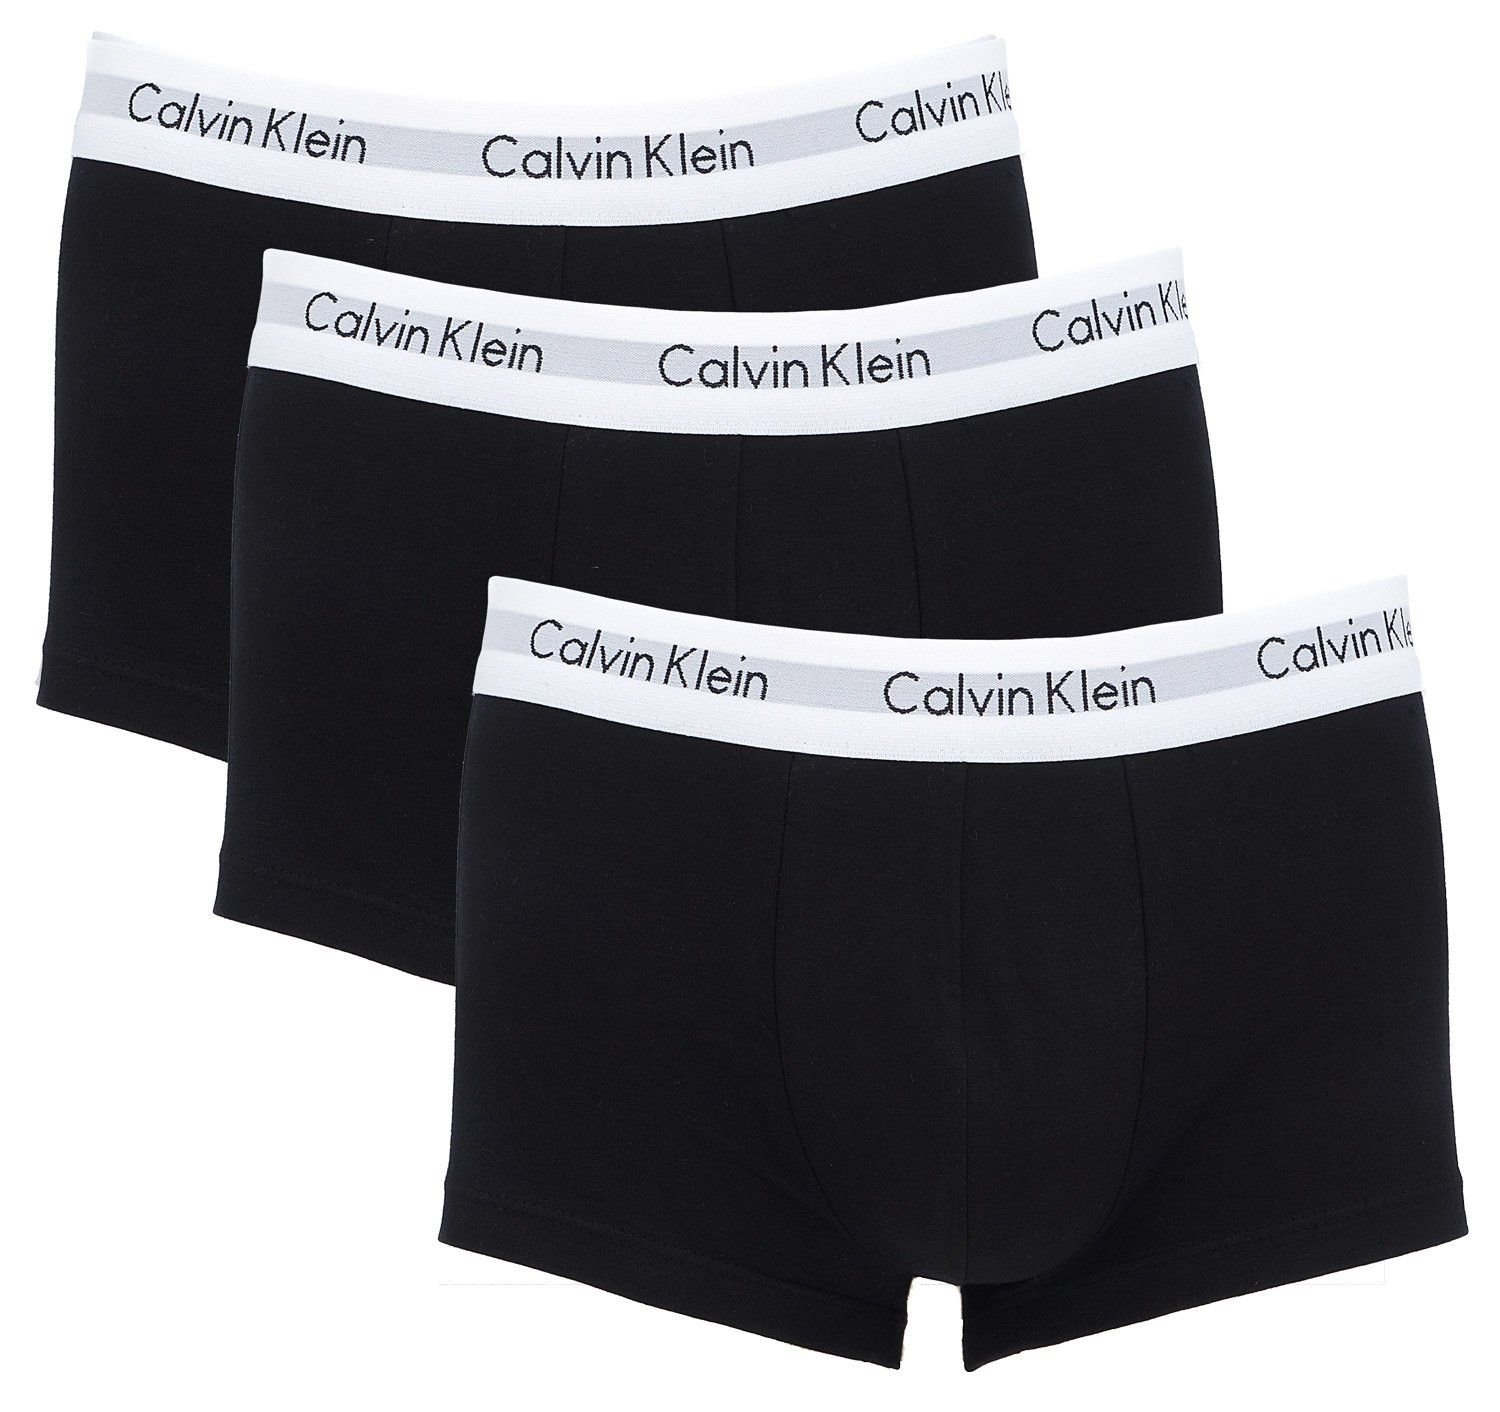 Cuecas Calvin Klein: conheças suas principais características